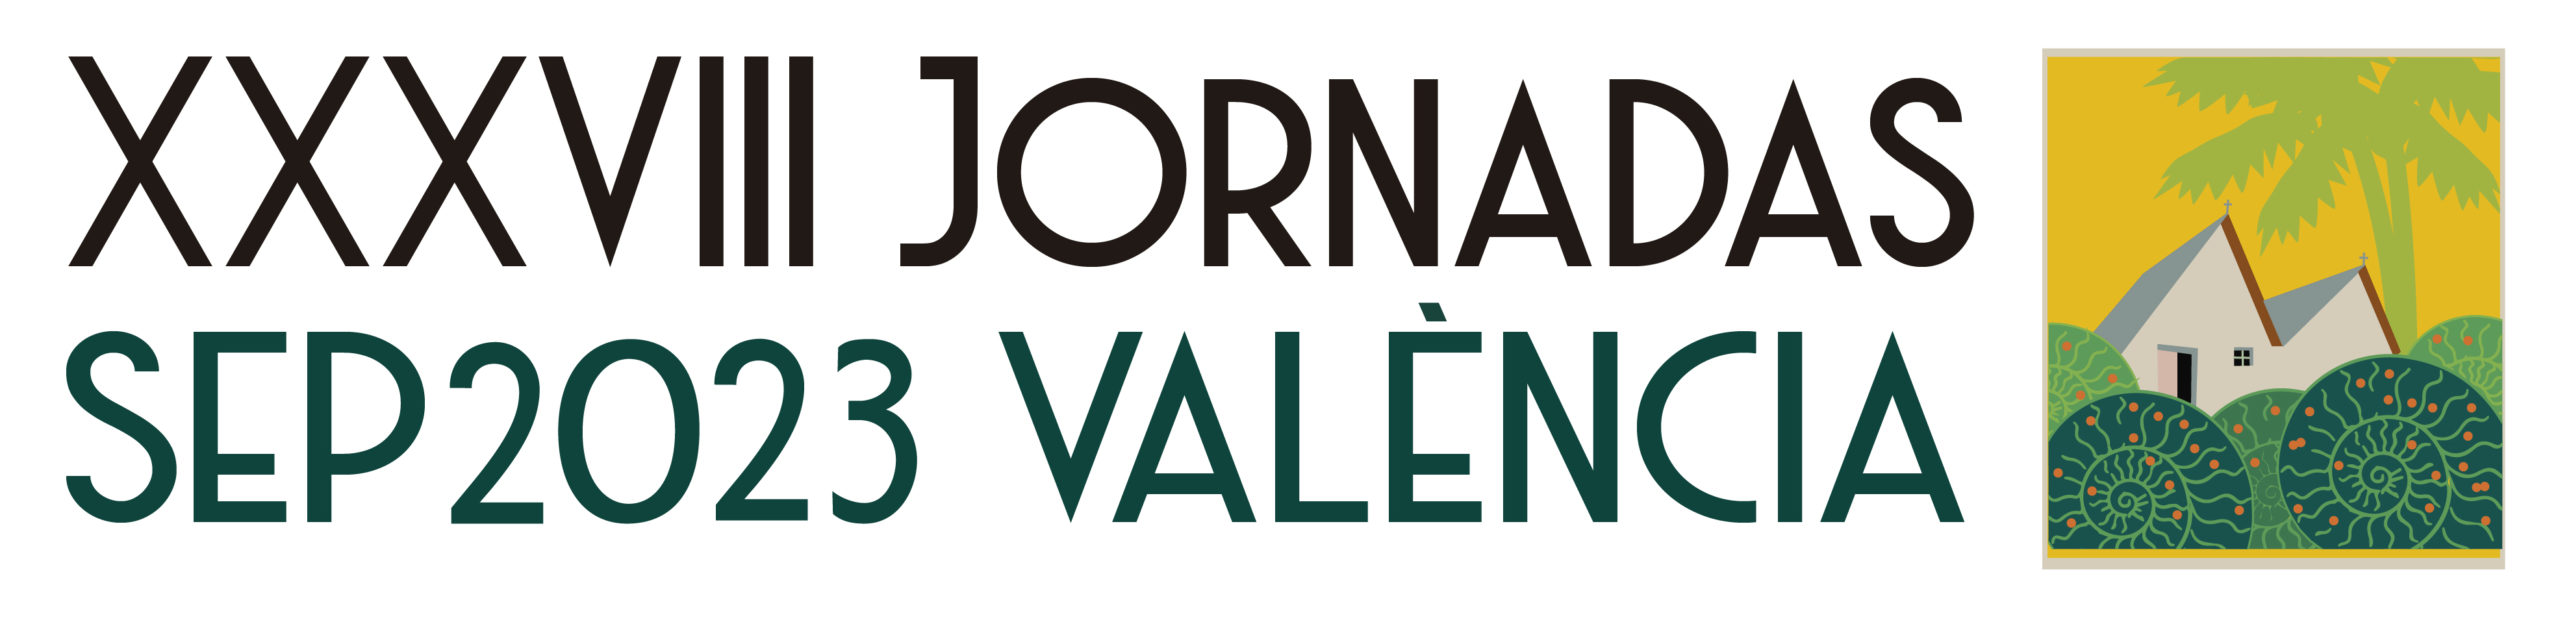 Log oJornadas de Paleontologia 2023 Valencia